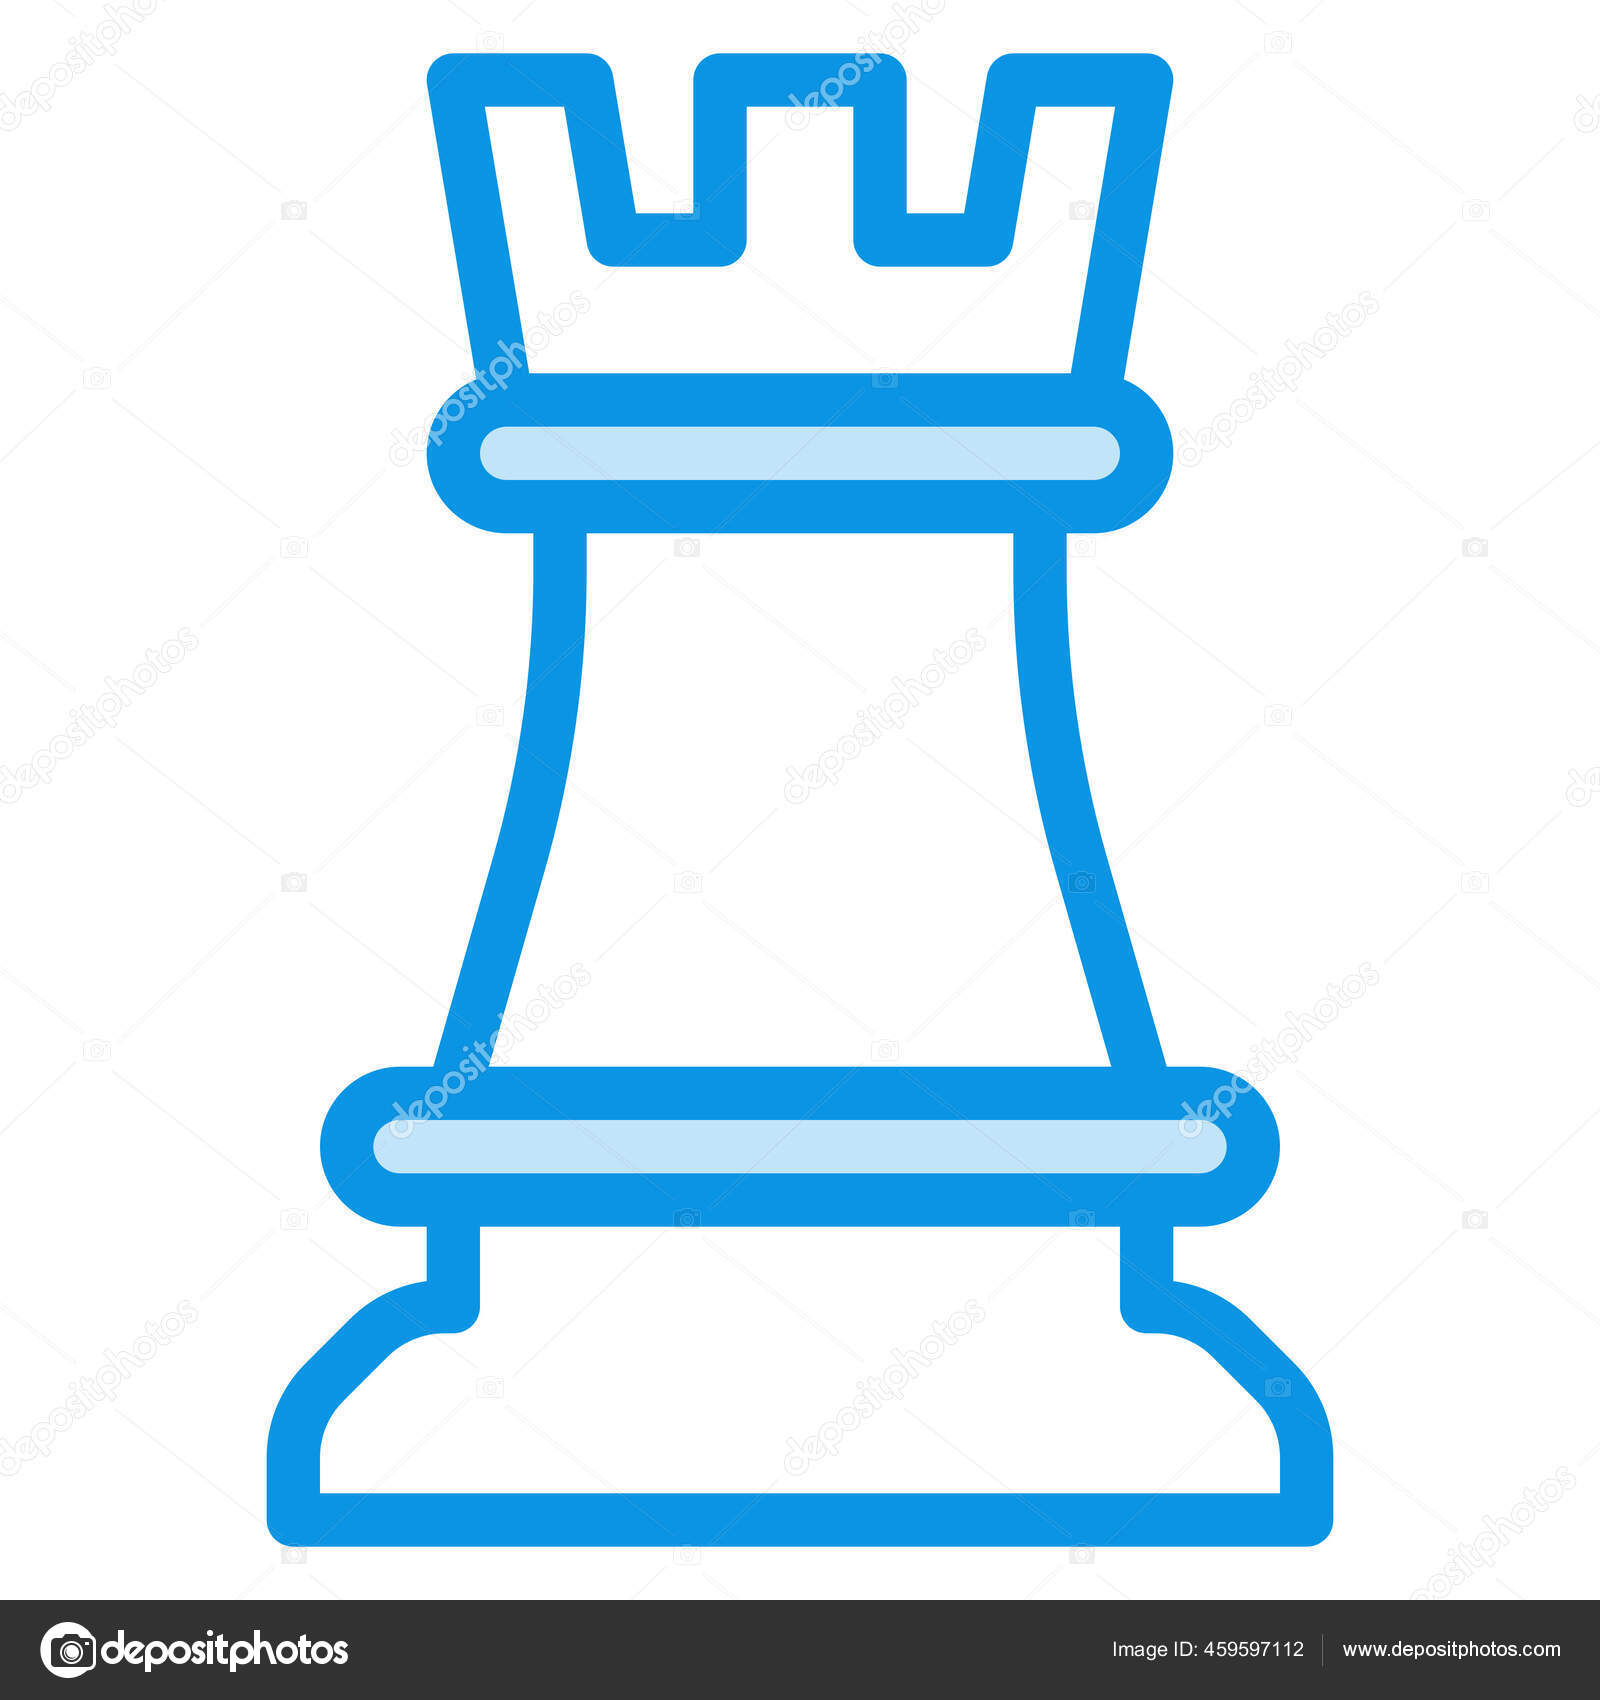 Xadrez rainha - Ícones Interface do usuário e gestos